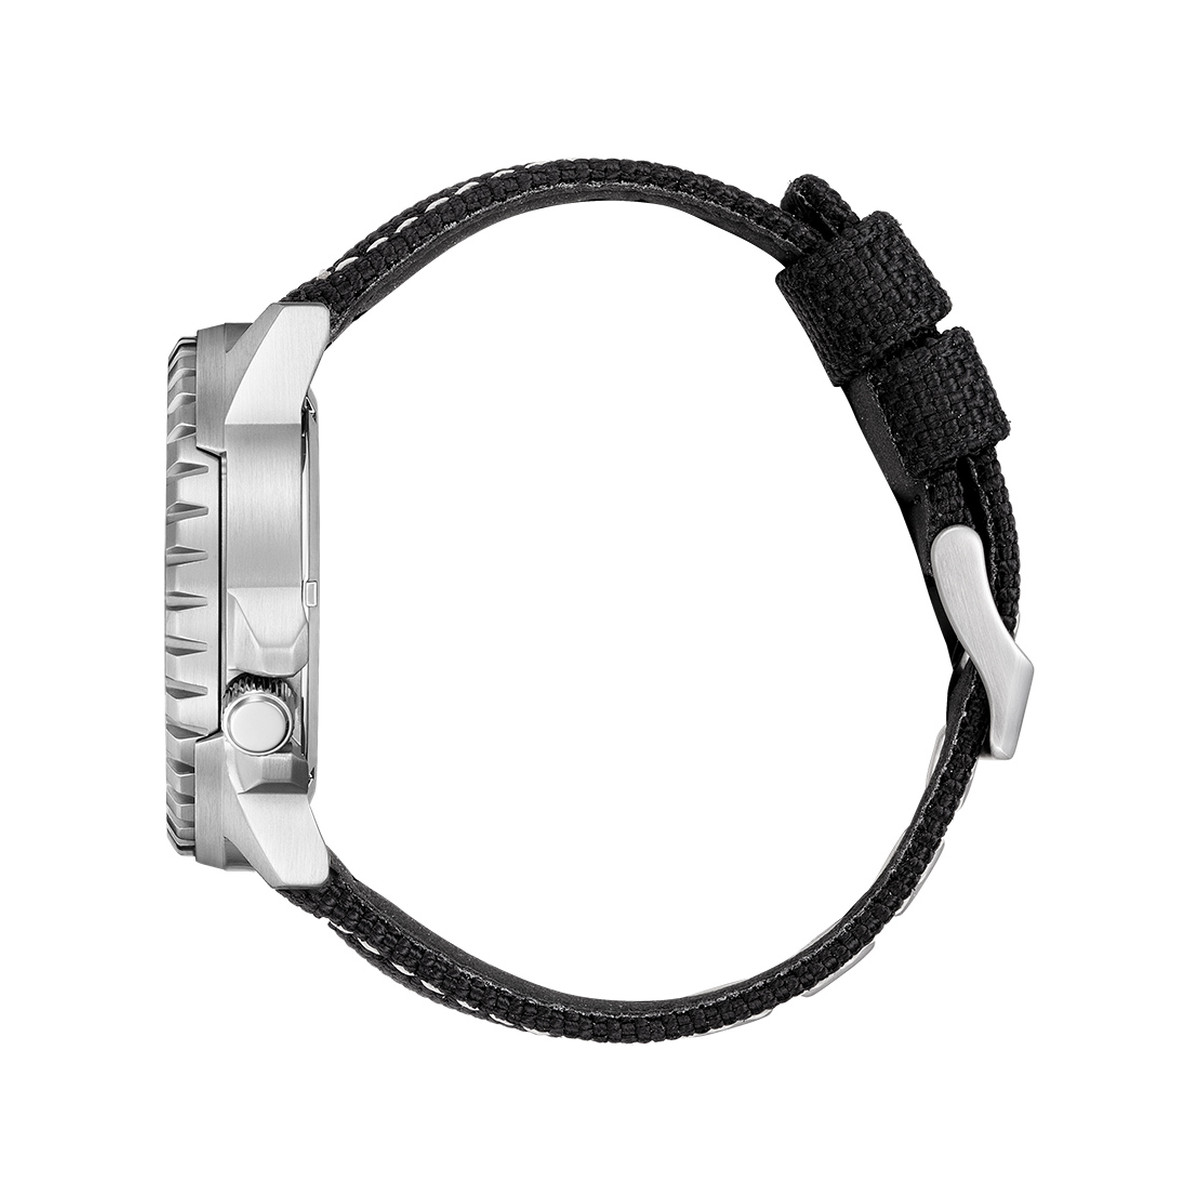 Montre Citizen homme automatique acier noir bracelet nylon noir - vue 2